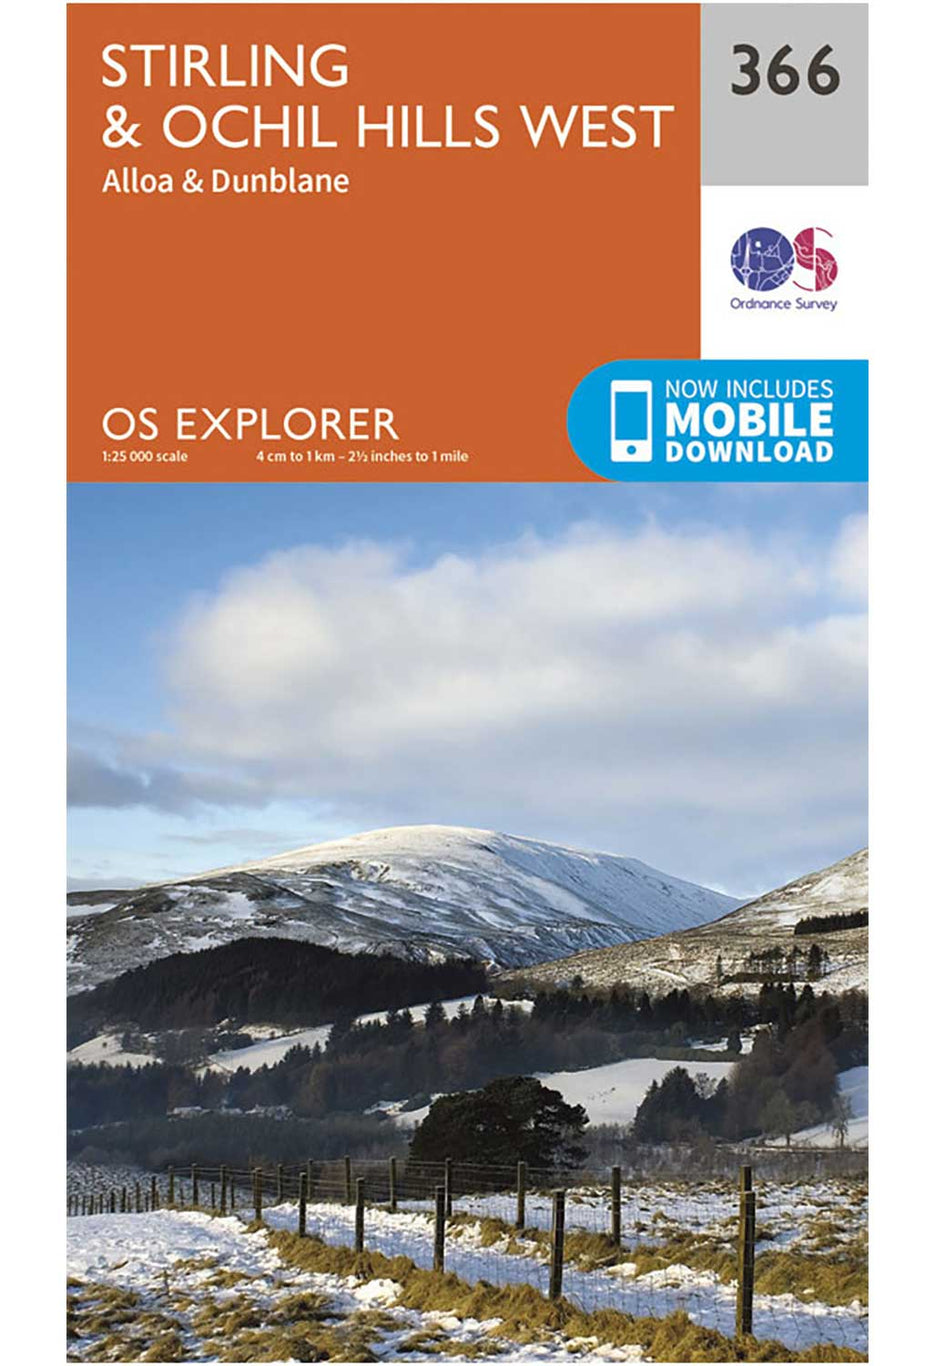 Ordnance Survey Stirling & Ochil Hills West - OS Explorer 366 Map 0